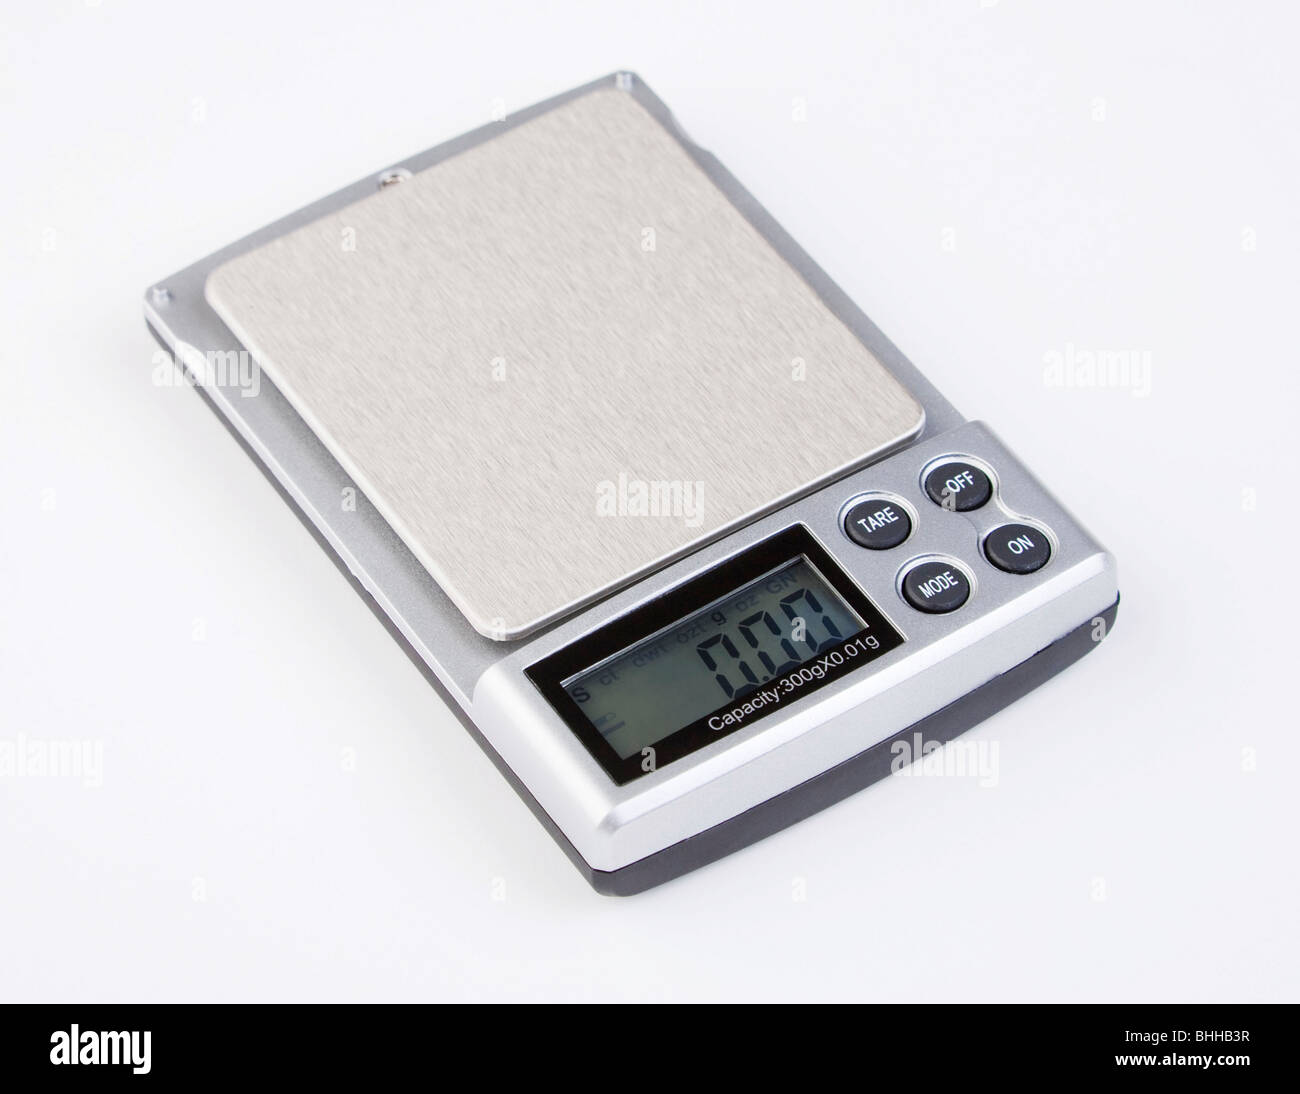 Báscula digital / equilibrio con una resolución de 0,01 gramos y capacidad 300 gramos. Foto de stock